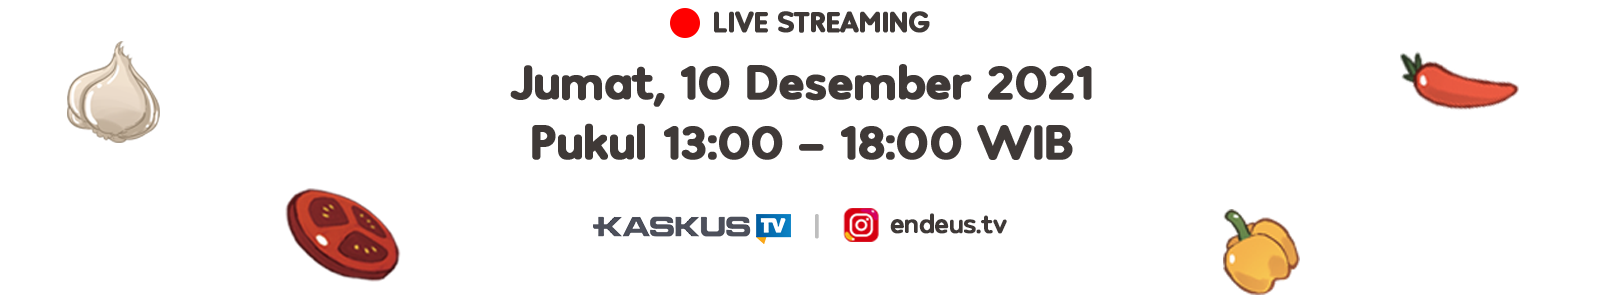 Live Streaming: Jumat, 10 Desember 2021 Pukul 13:00 - 18:00 WIB di Kaskus TV & Instagram Endeus.tv